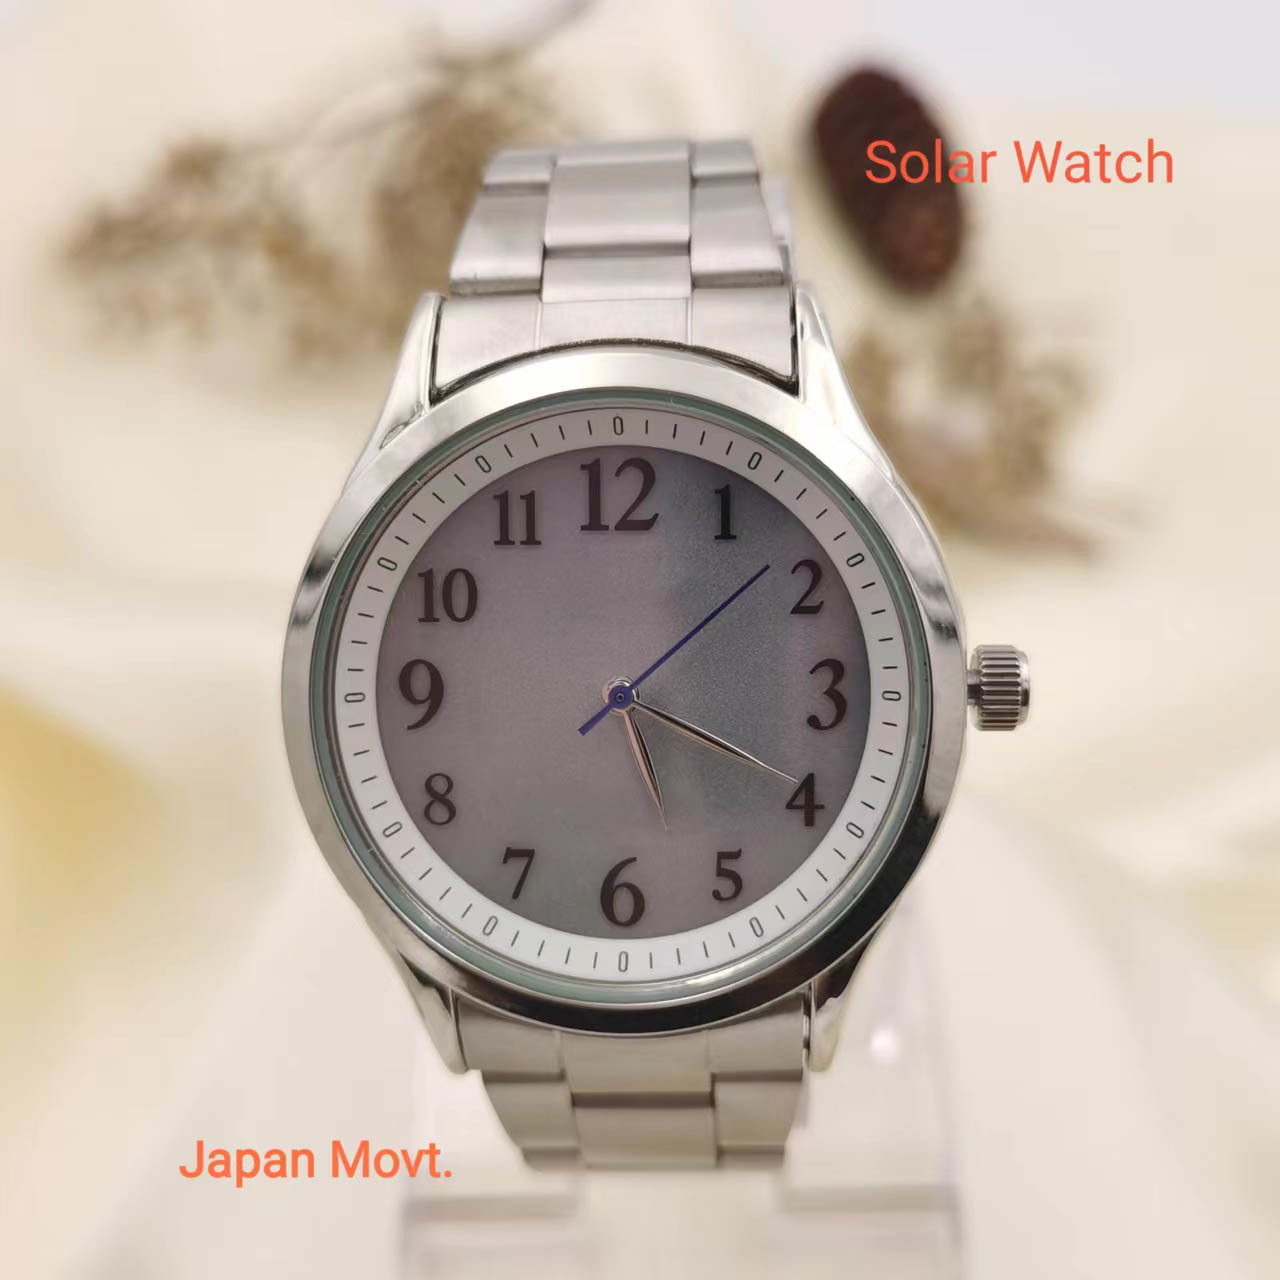 Solar watch